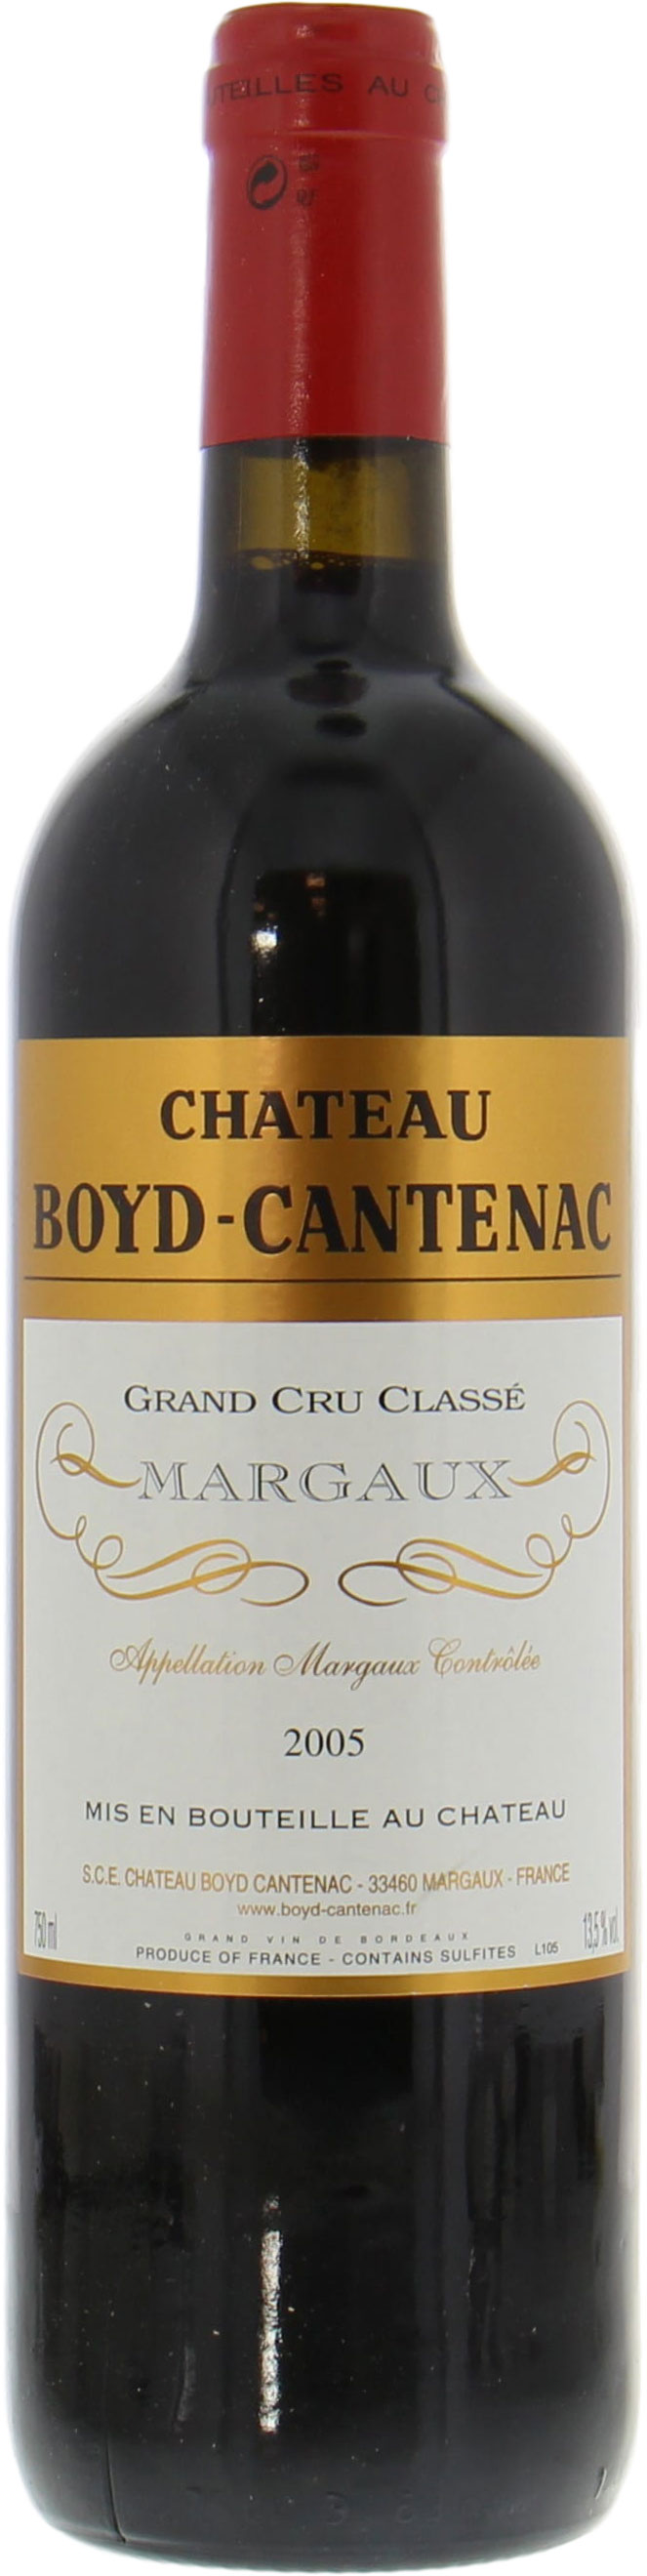 Chateau Boyd-Cantenac - Chateau Boyd-Cantenac 2005 Perfect